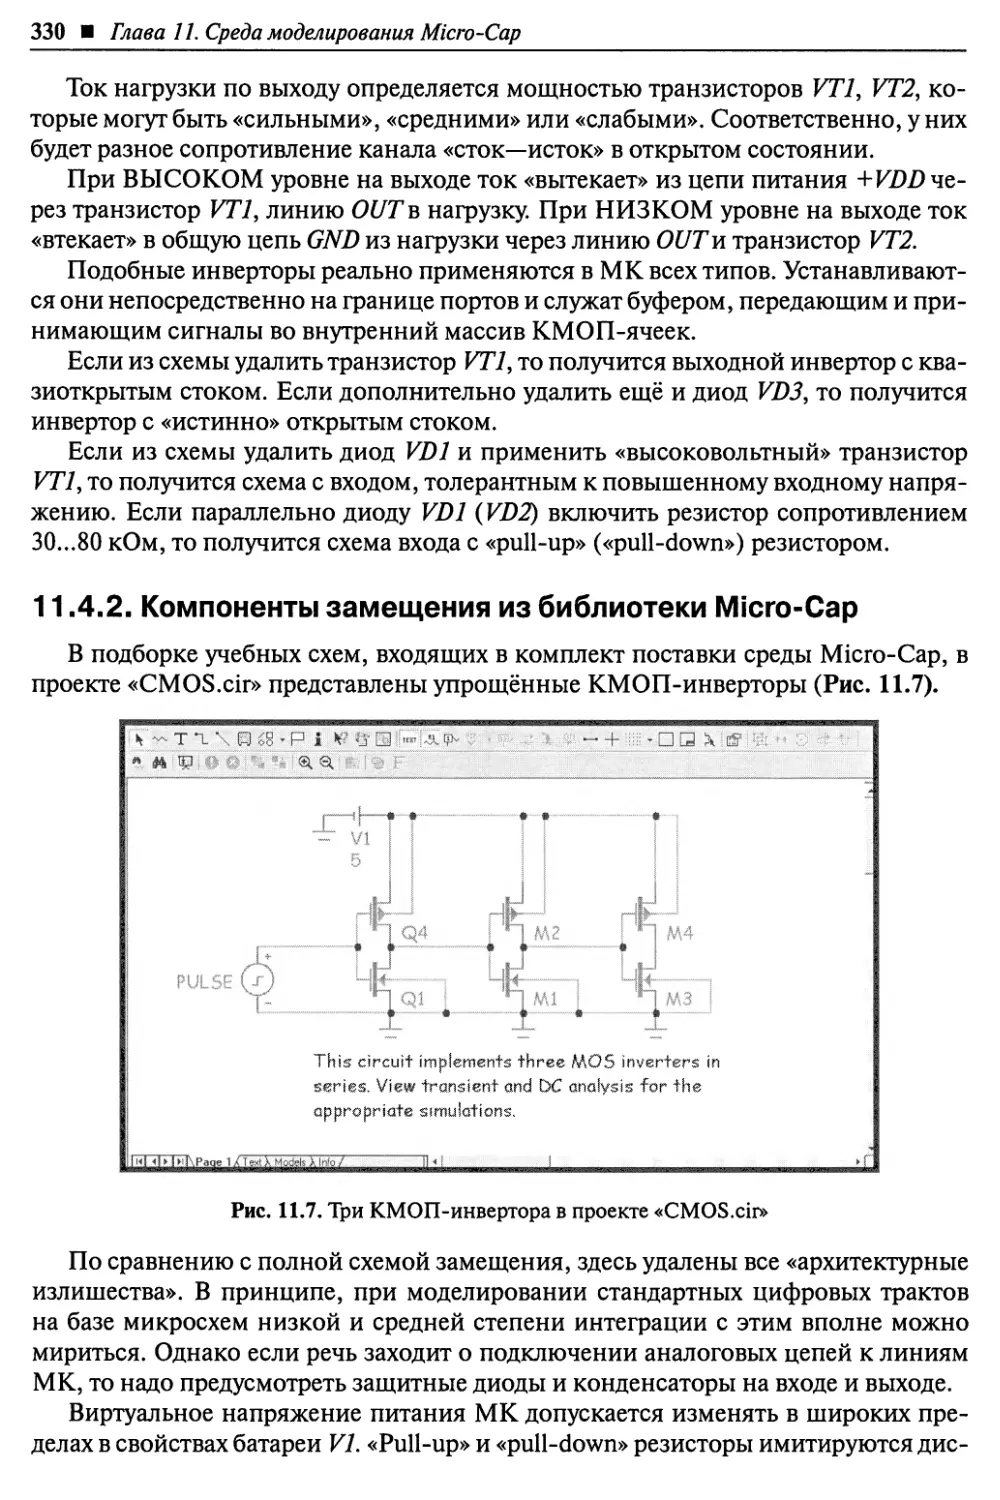 11.4.2. Компоненты замещения из библиотеки Micro-Cap